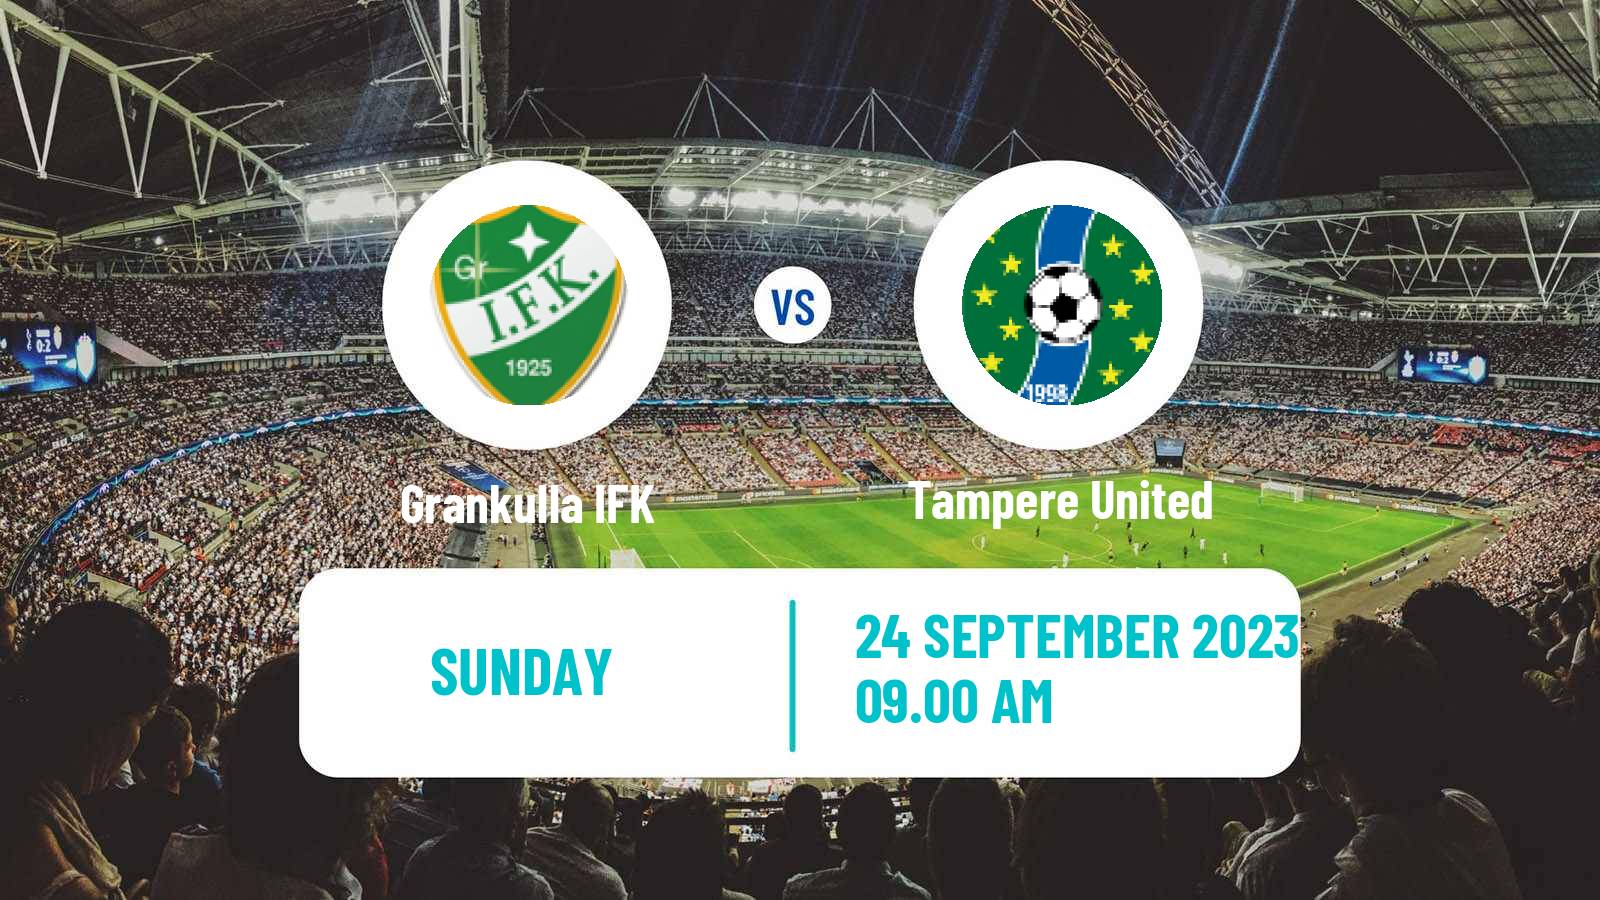 Soccer Finnish Kakkonen Group B Grankulla IFK - Tampere United